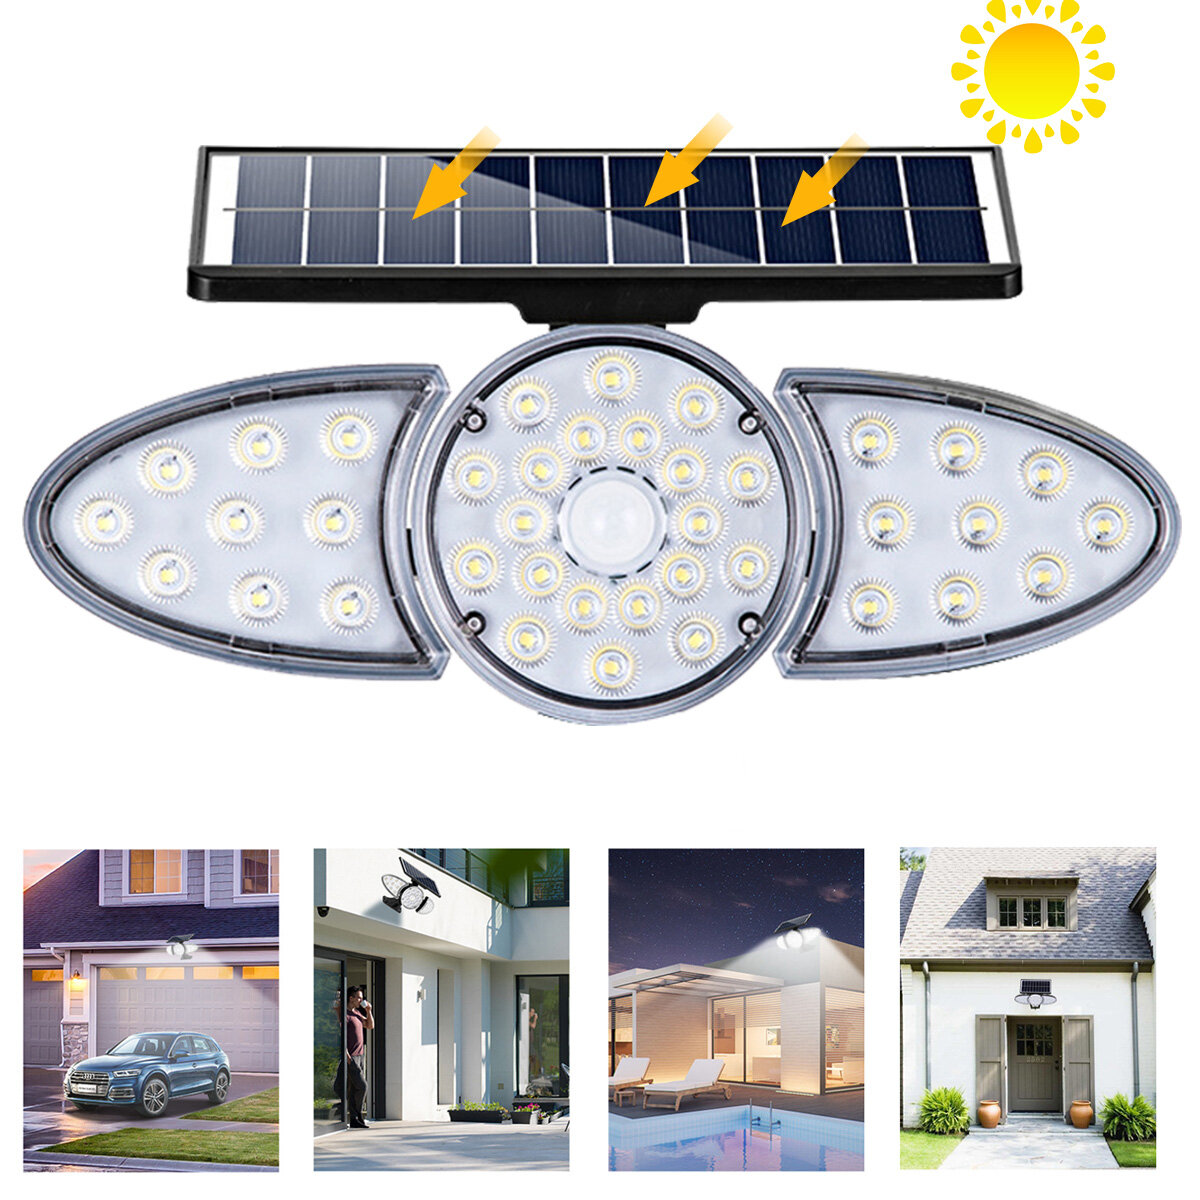 Lampe murale solaire à LED réglable avec capteur de corps, étanche IP65, projecteur solaire super lumineux pour jardin extérieur.